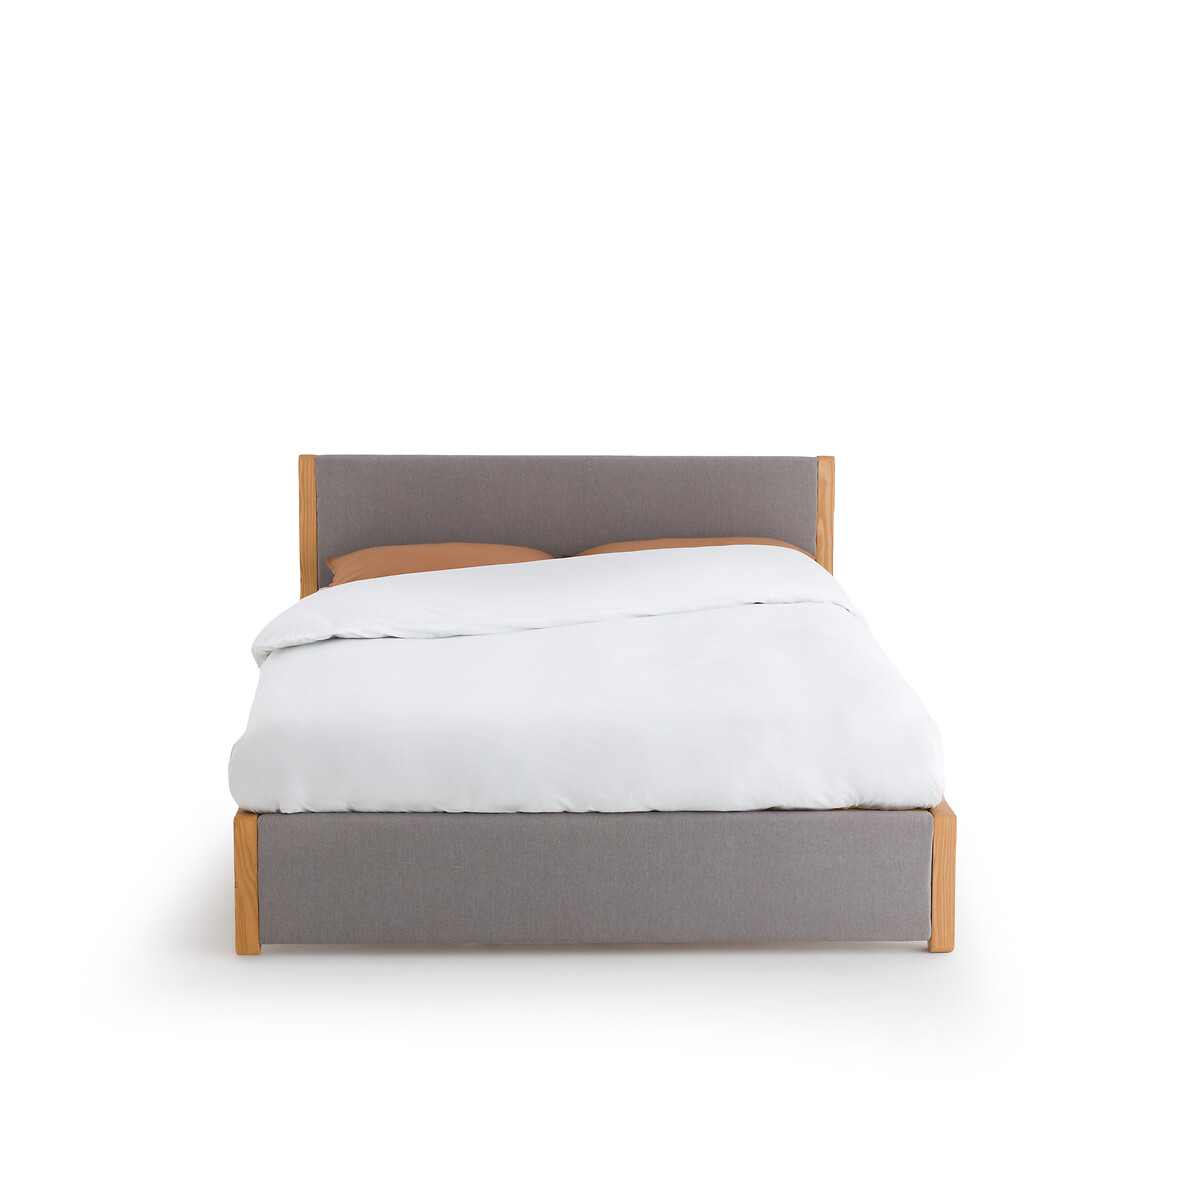 Кровать La Redoute С реечным дном ELORI 140 x 190 см серый, размер 140 x 190 см - фото 2